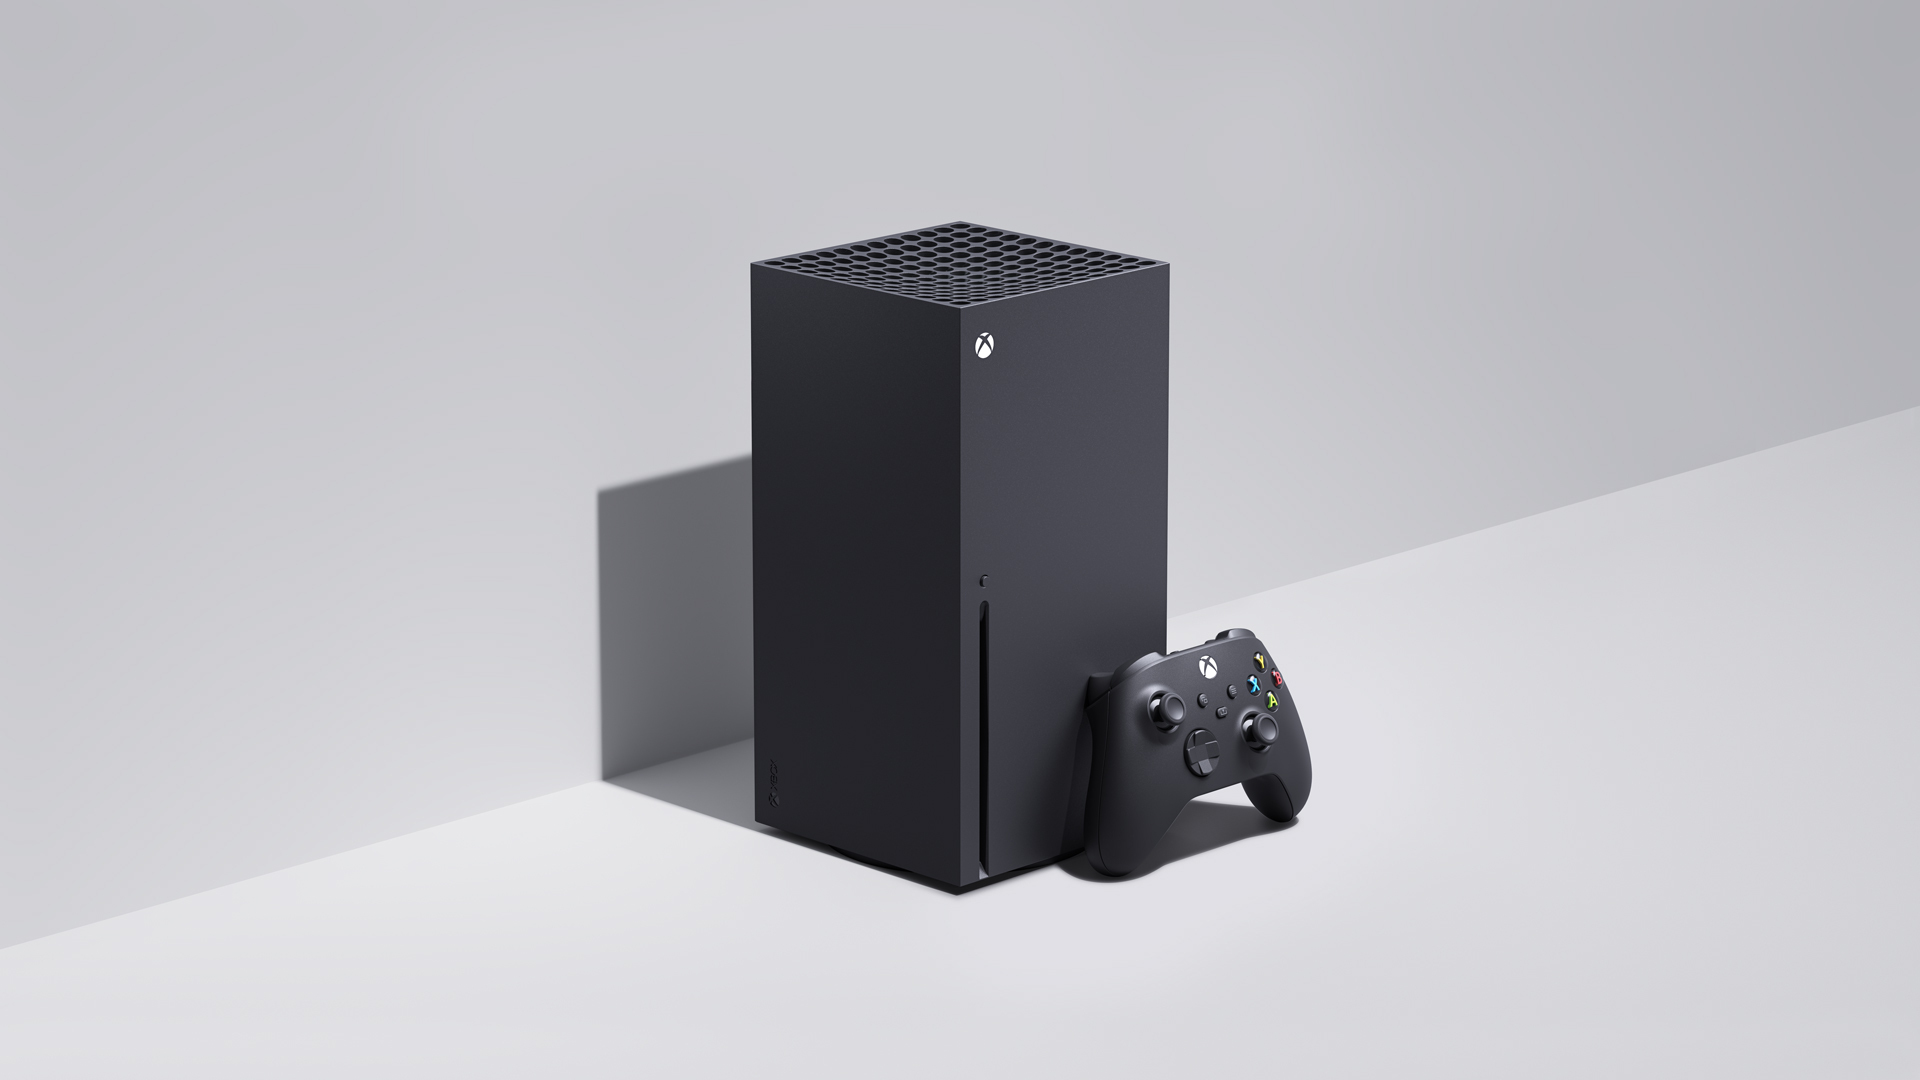 GTA 5 Graphics Xbox Series X VS Xbox One Comparison - Price, Download Size,  Release Time & MORE! 